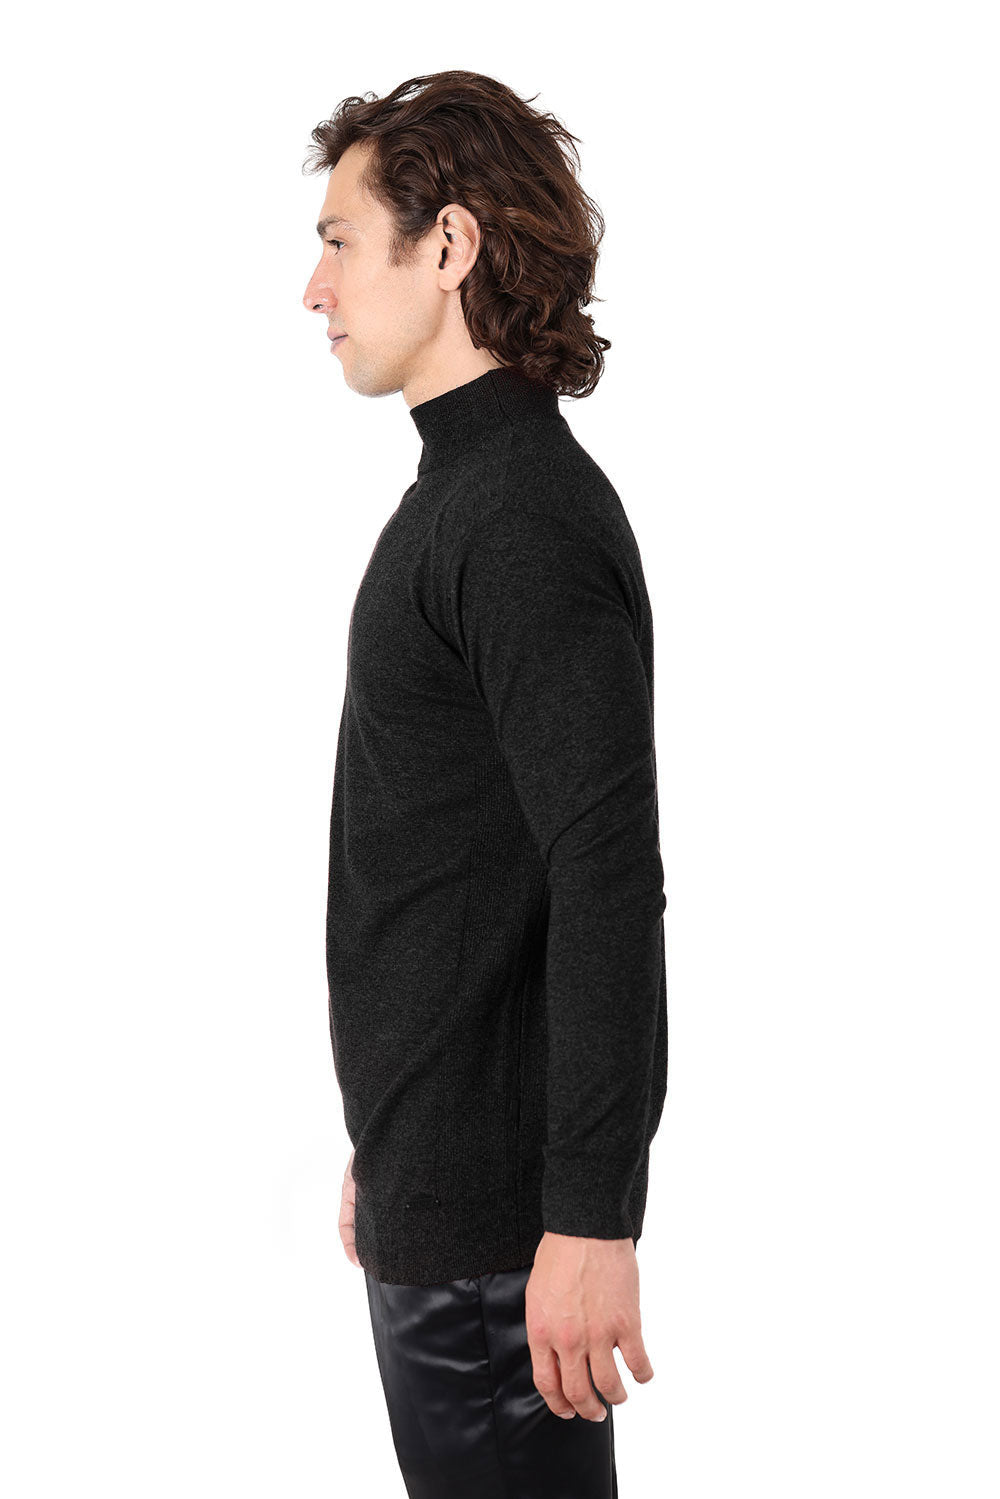 Men's Turtleneck Ribbed Solid Color Mock Turtleneck Sweater 2LS2103 Black